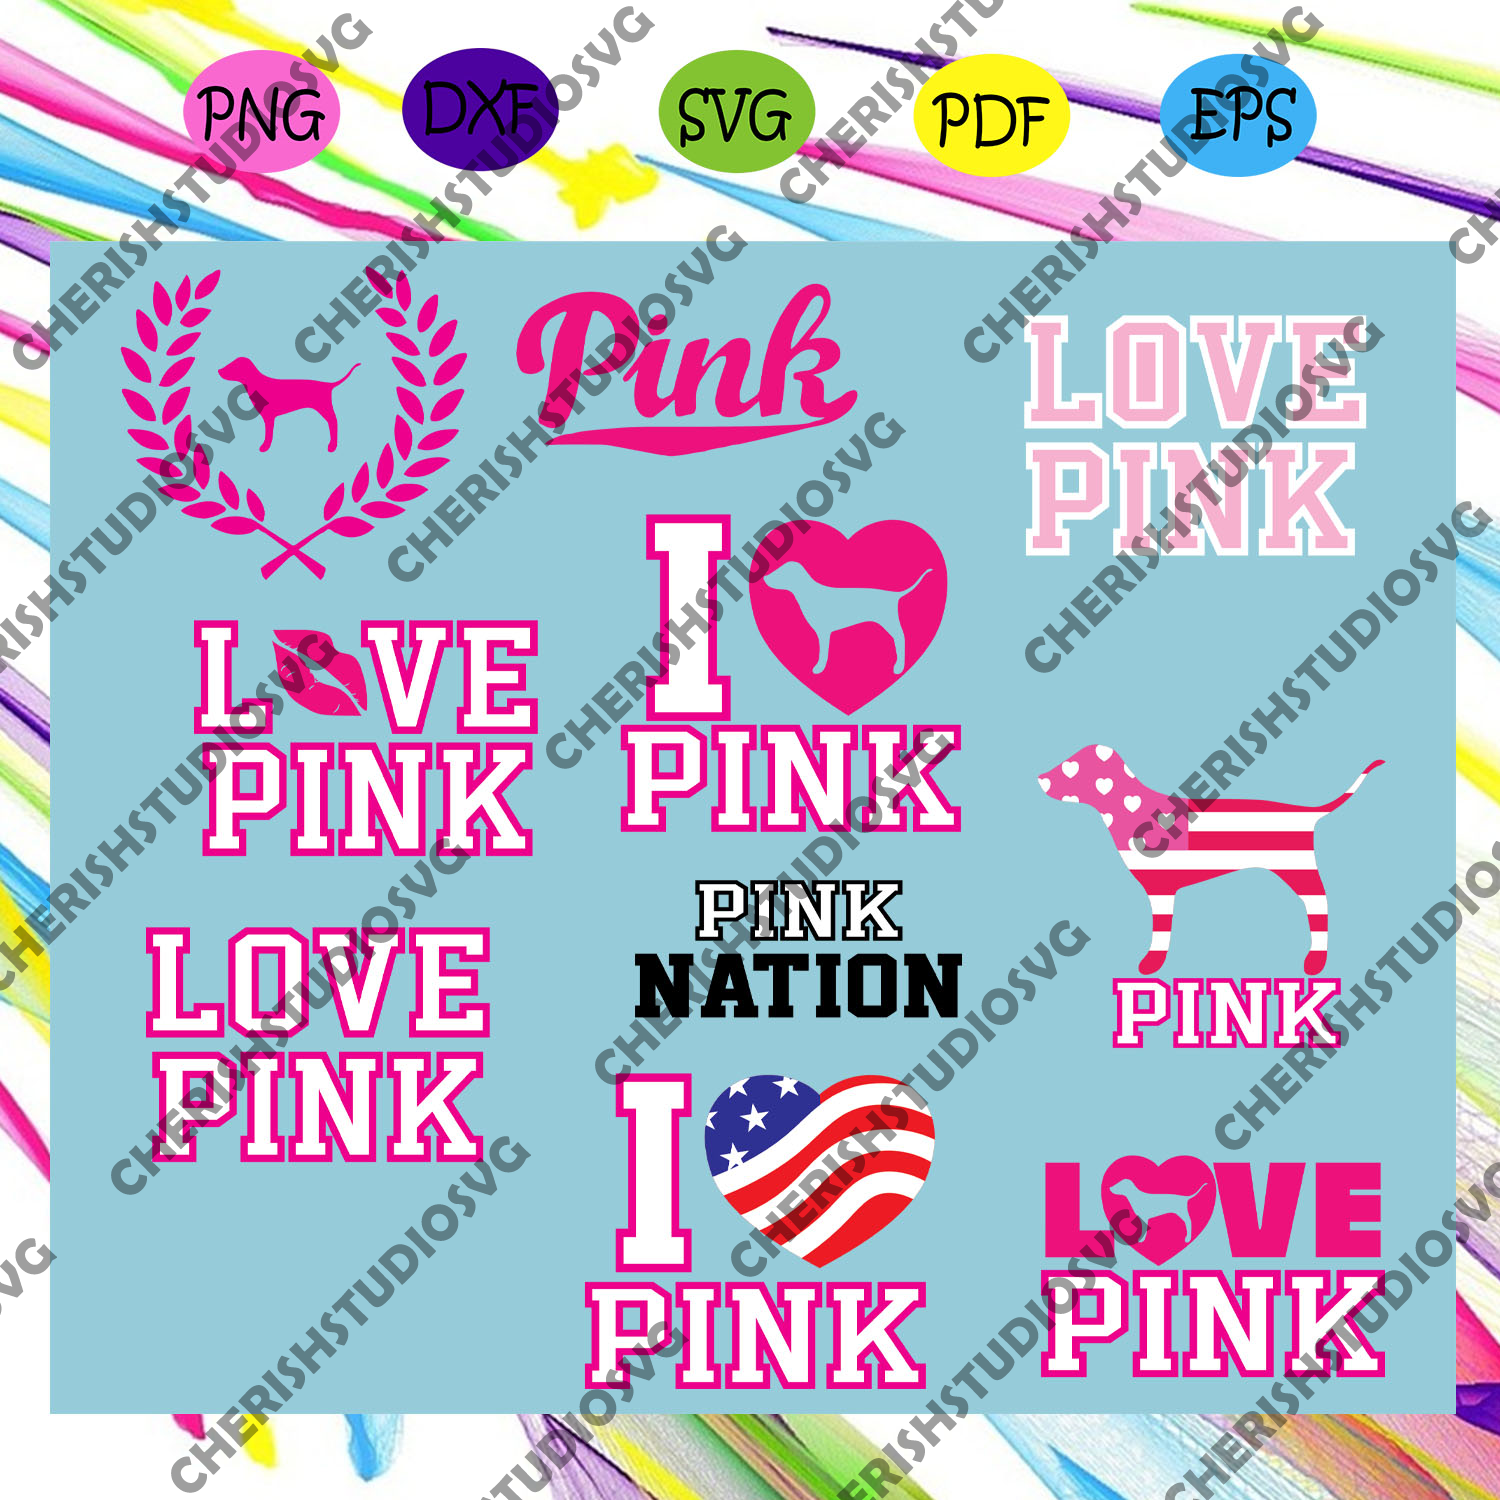 Download Love Pink Svg Love Pink Clip Art Pink Nation Svg Love Pink Dog Svg Cherishsvgstudio